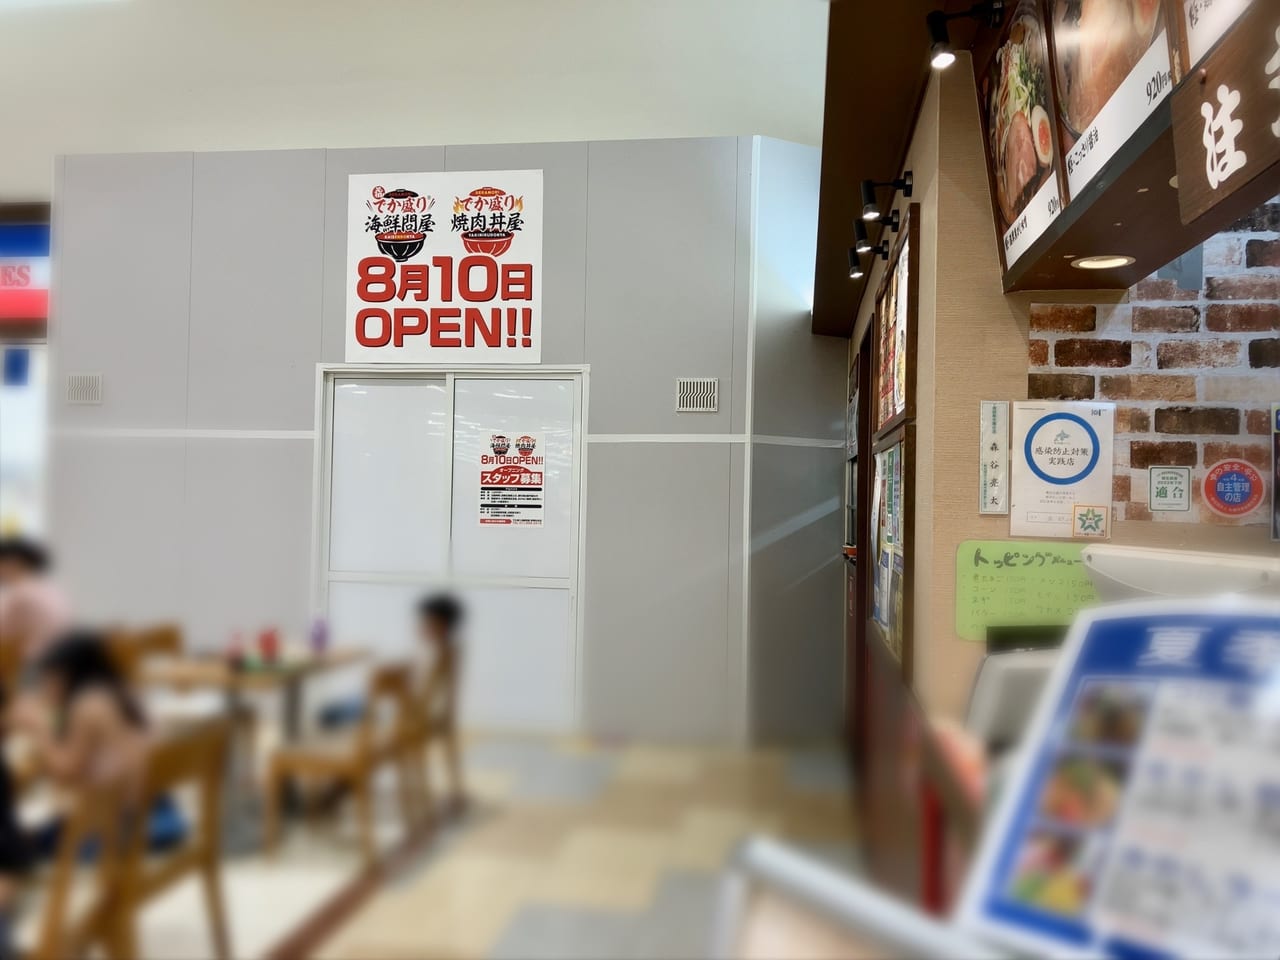 「イオンモール札幌苗穂」のフードコート空き店舗にお知らせが。新しいお店がオープンが決定したようです！